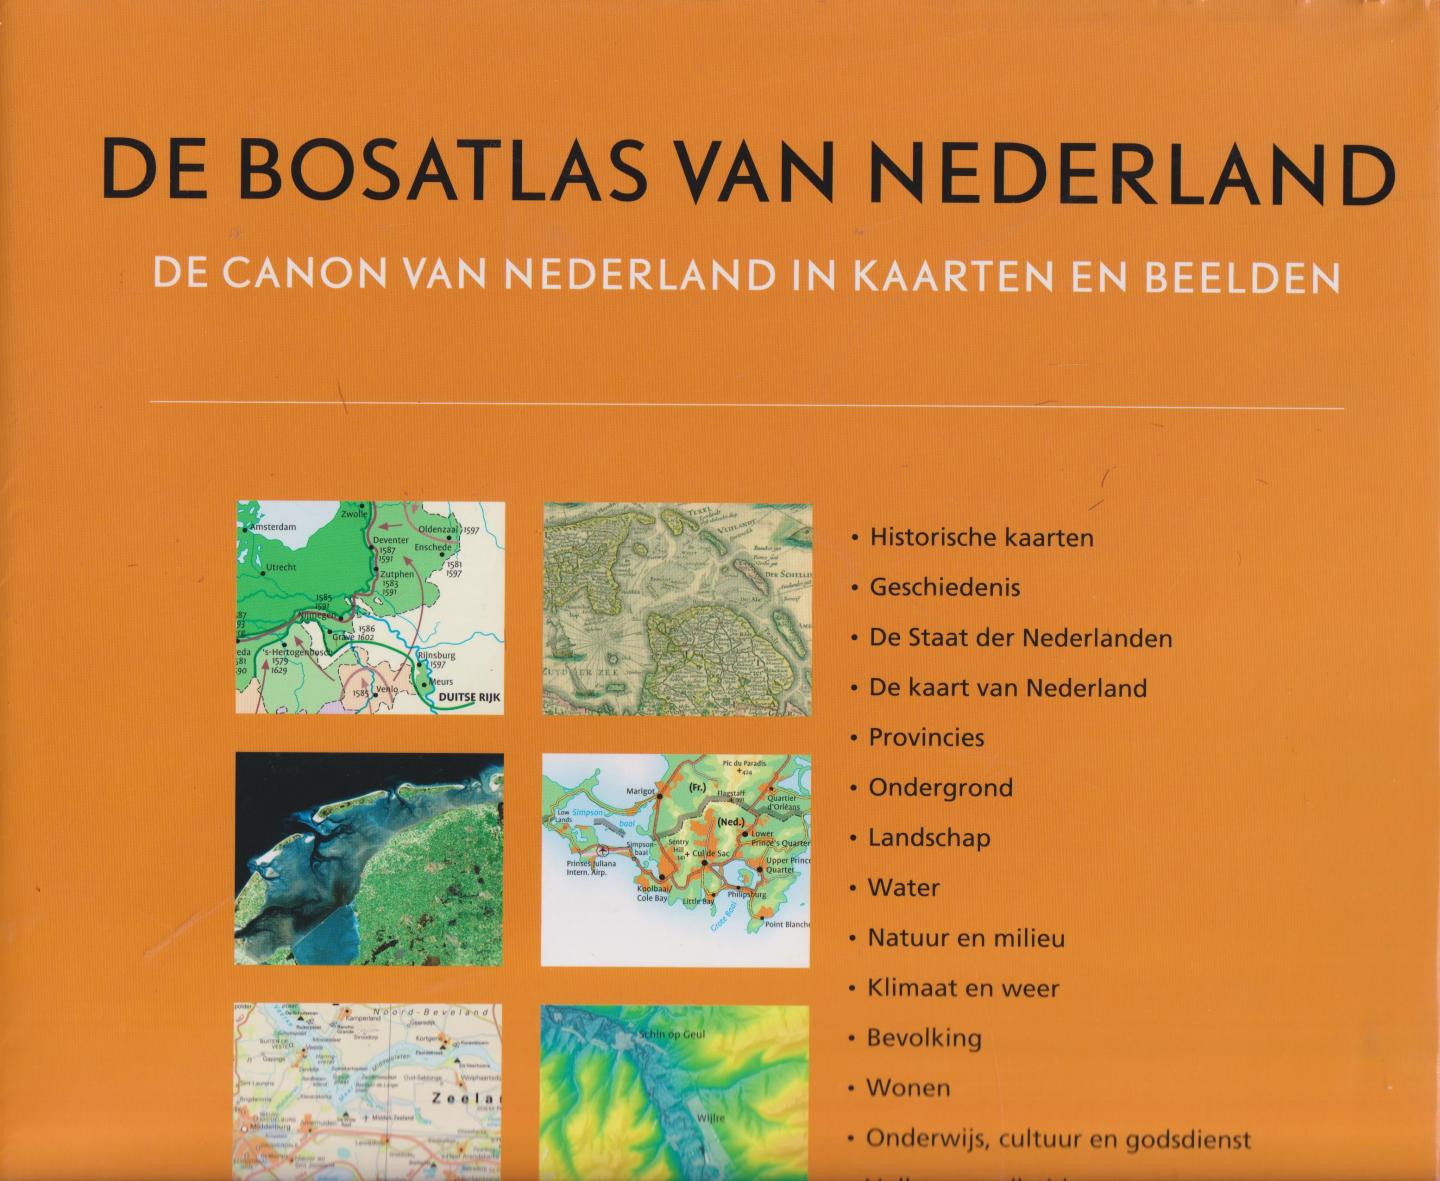 Vroege, Peter (Uitgever atlassen redatie) - De Bosatlas van Nederland - De canon van Nederland in kaarten en beelden - In meer dan 560 pagina's met meer dan 2400 kaarten en beelden is deze bosatlas van Nederland een spectaculaire ontdekkingsreis door ons eigen land.